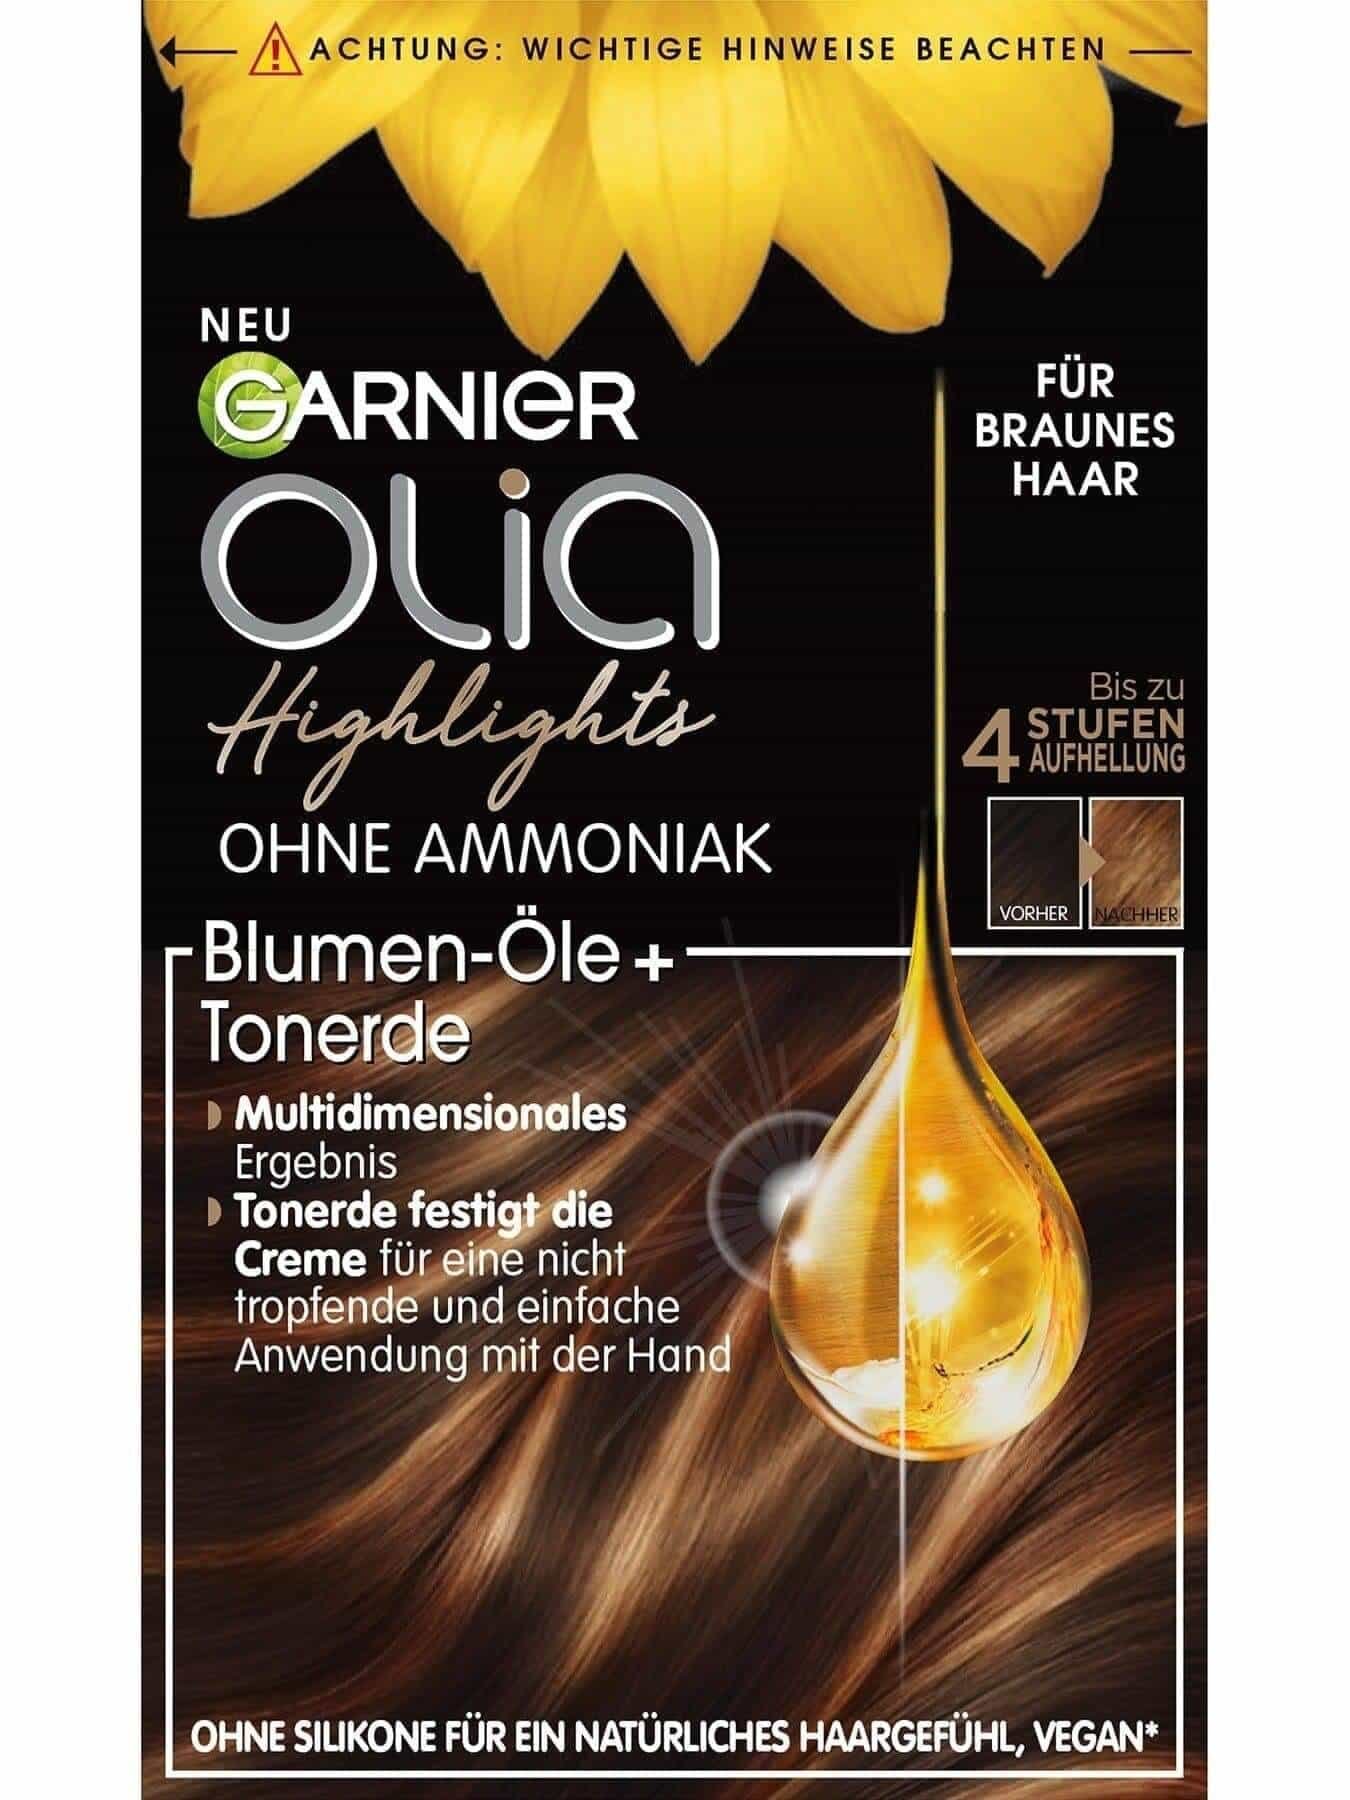 Olia Highlights für braunes Haar Produktbild